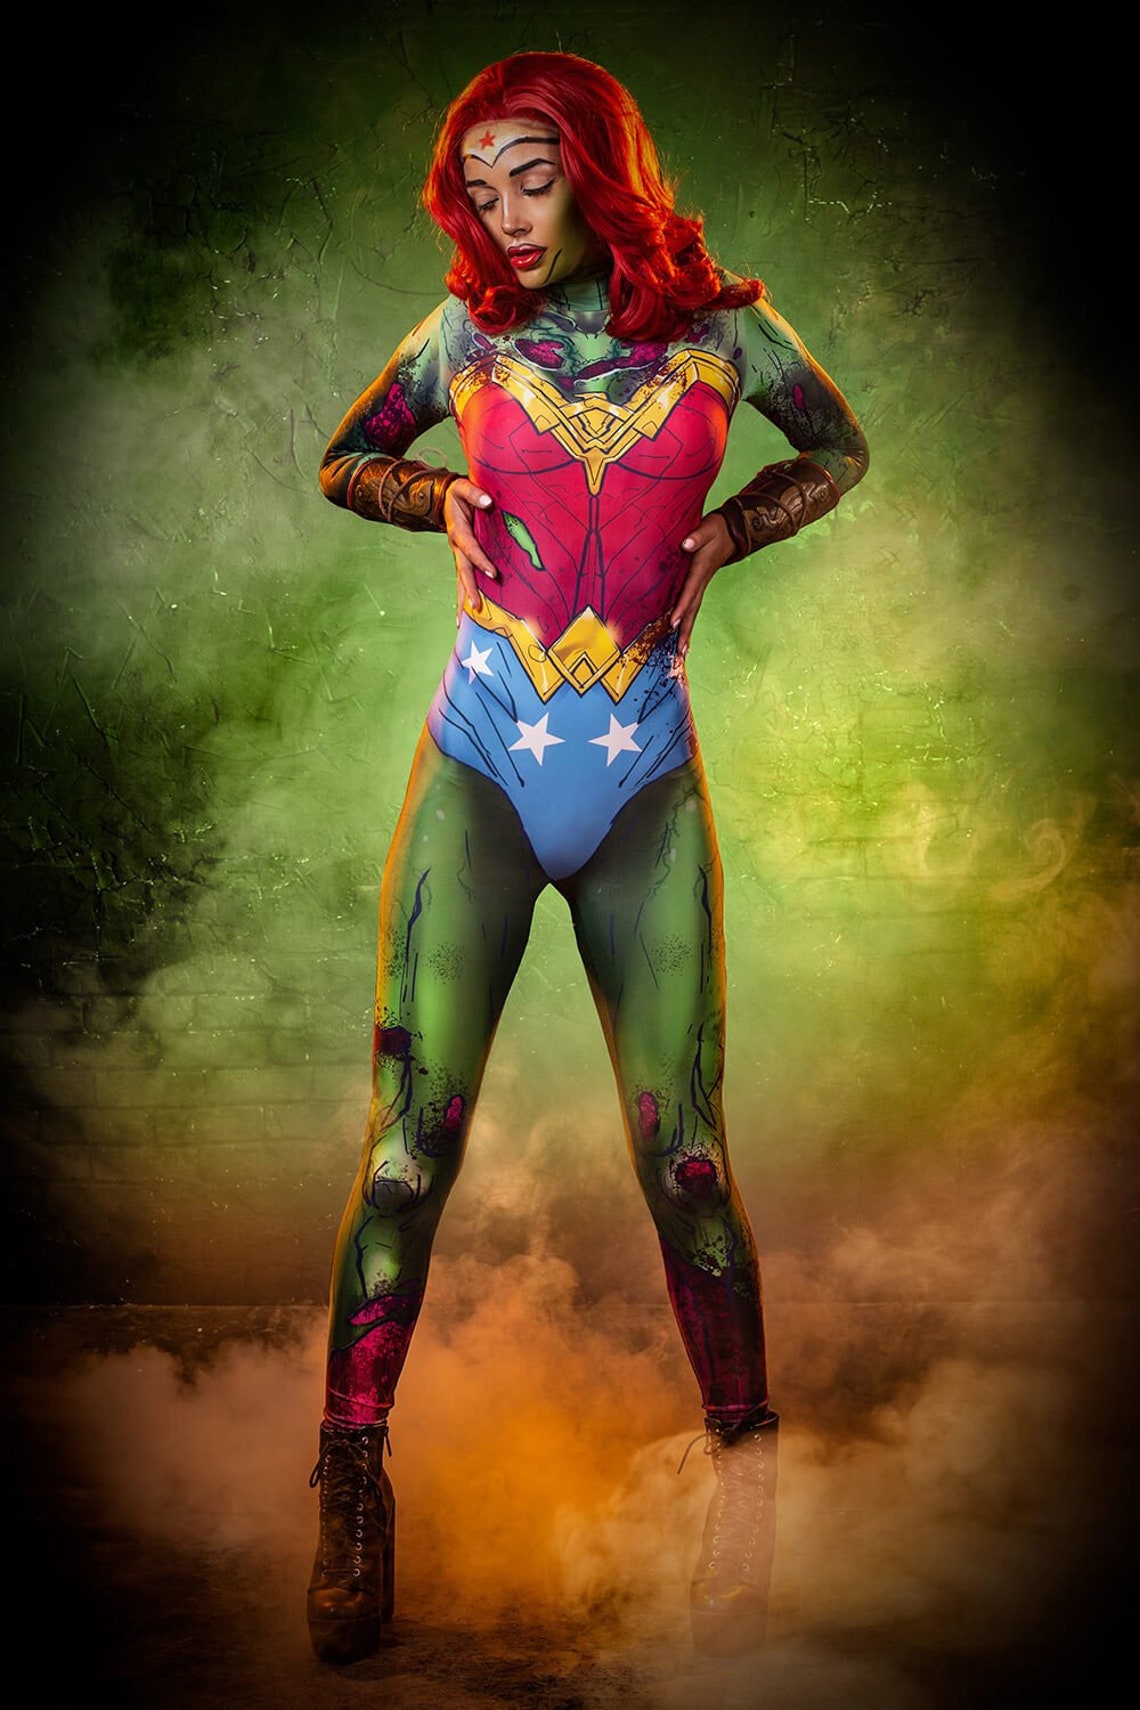 Wonder Woman Inspired Zombie Costume Superhero Costume Women | Etsy